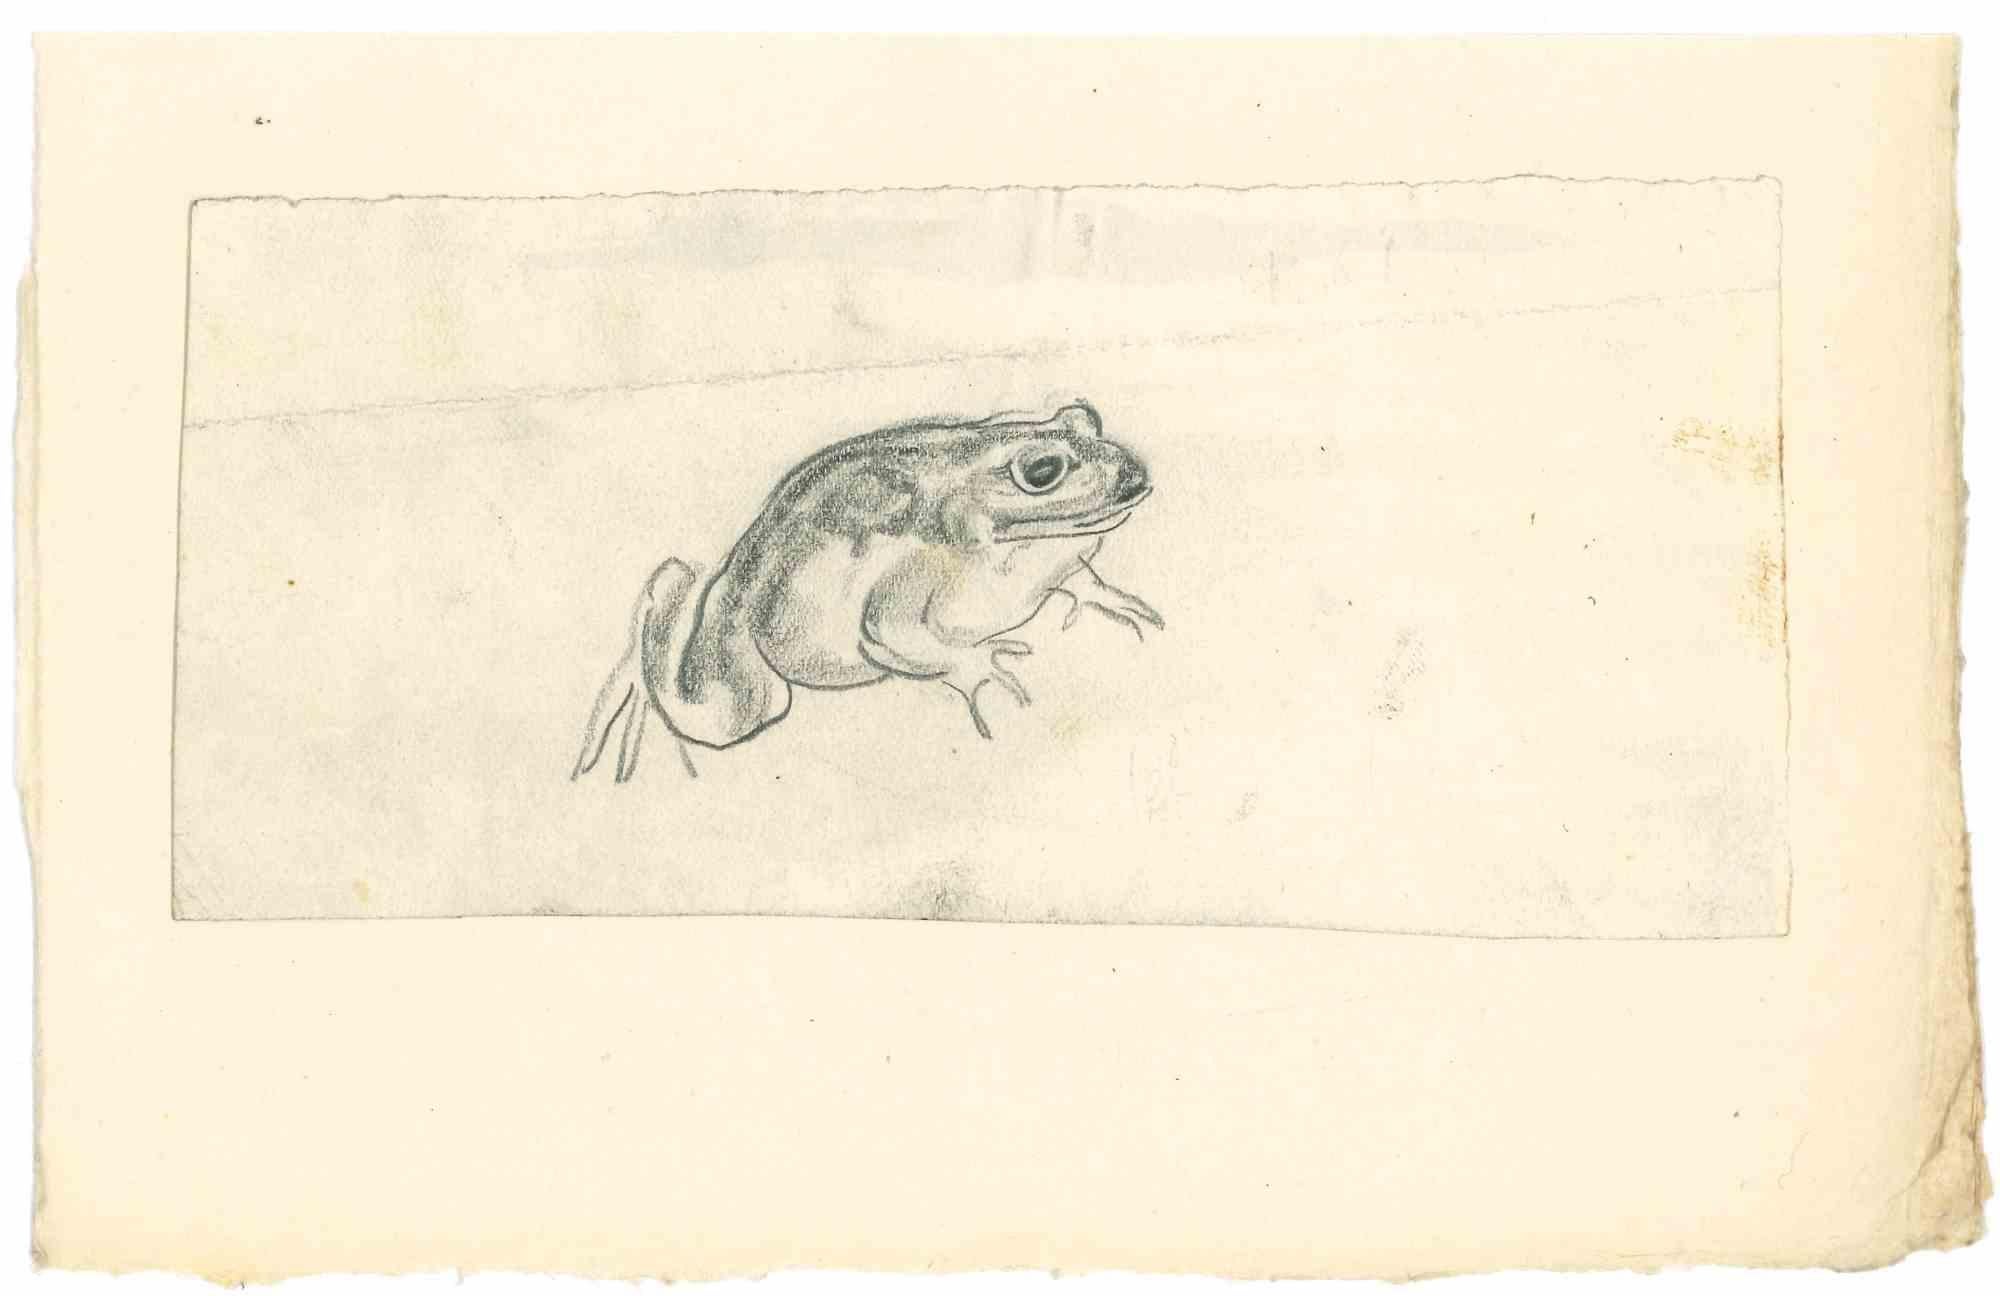 Frog - Dessin au crayon par Emmanuel Gondouin - Années 1930